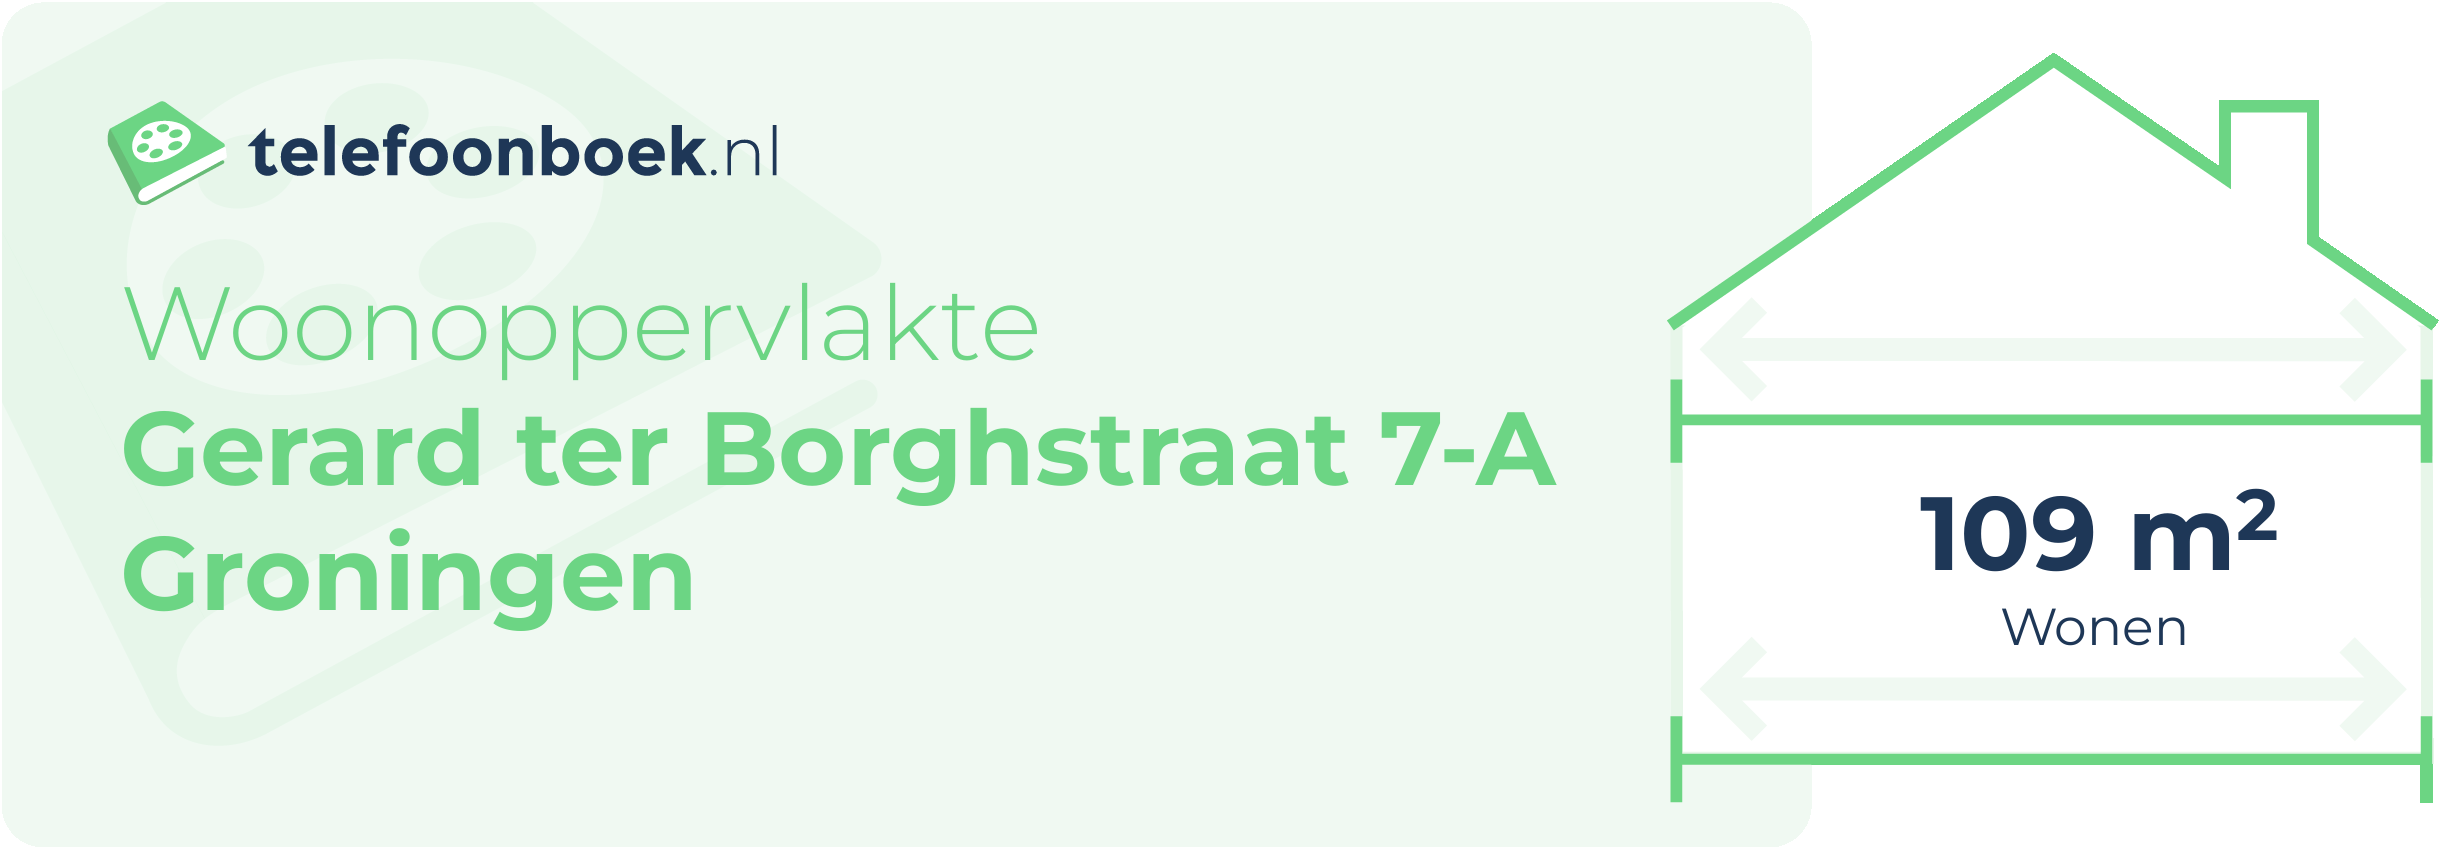 Woonoppervlakte Gerard Ter Borghstraat 7-A Groningen